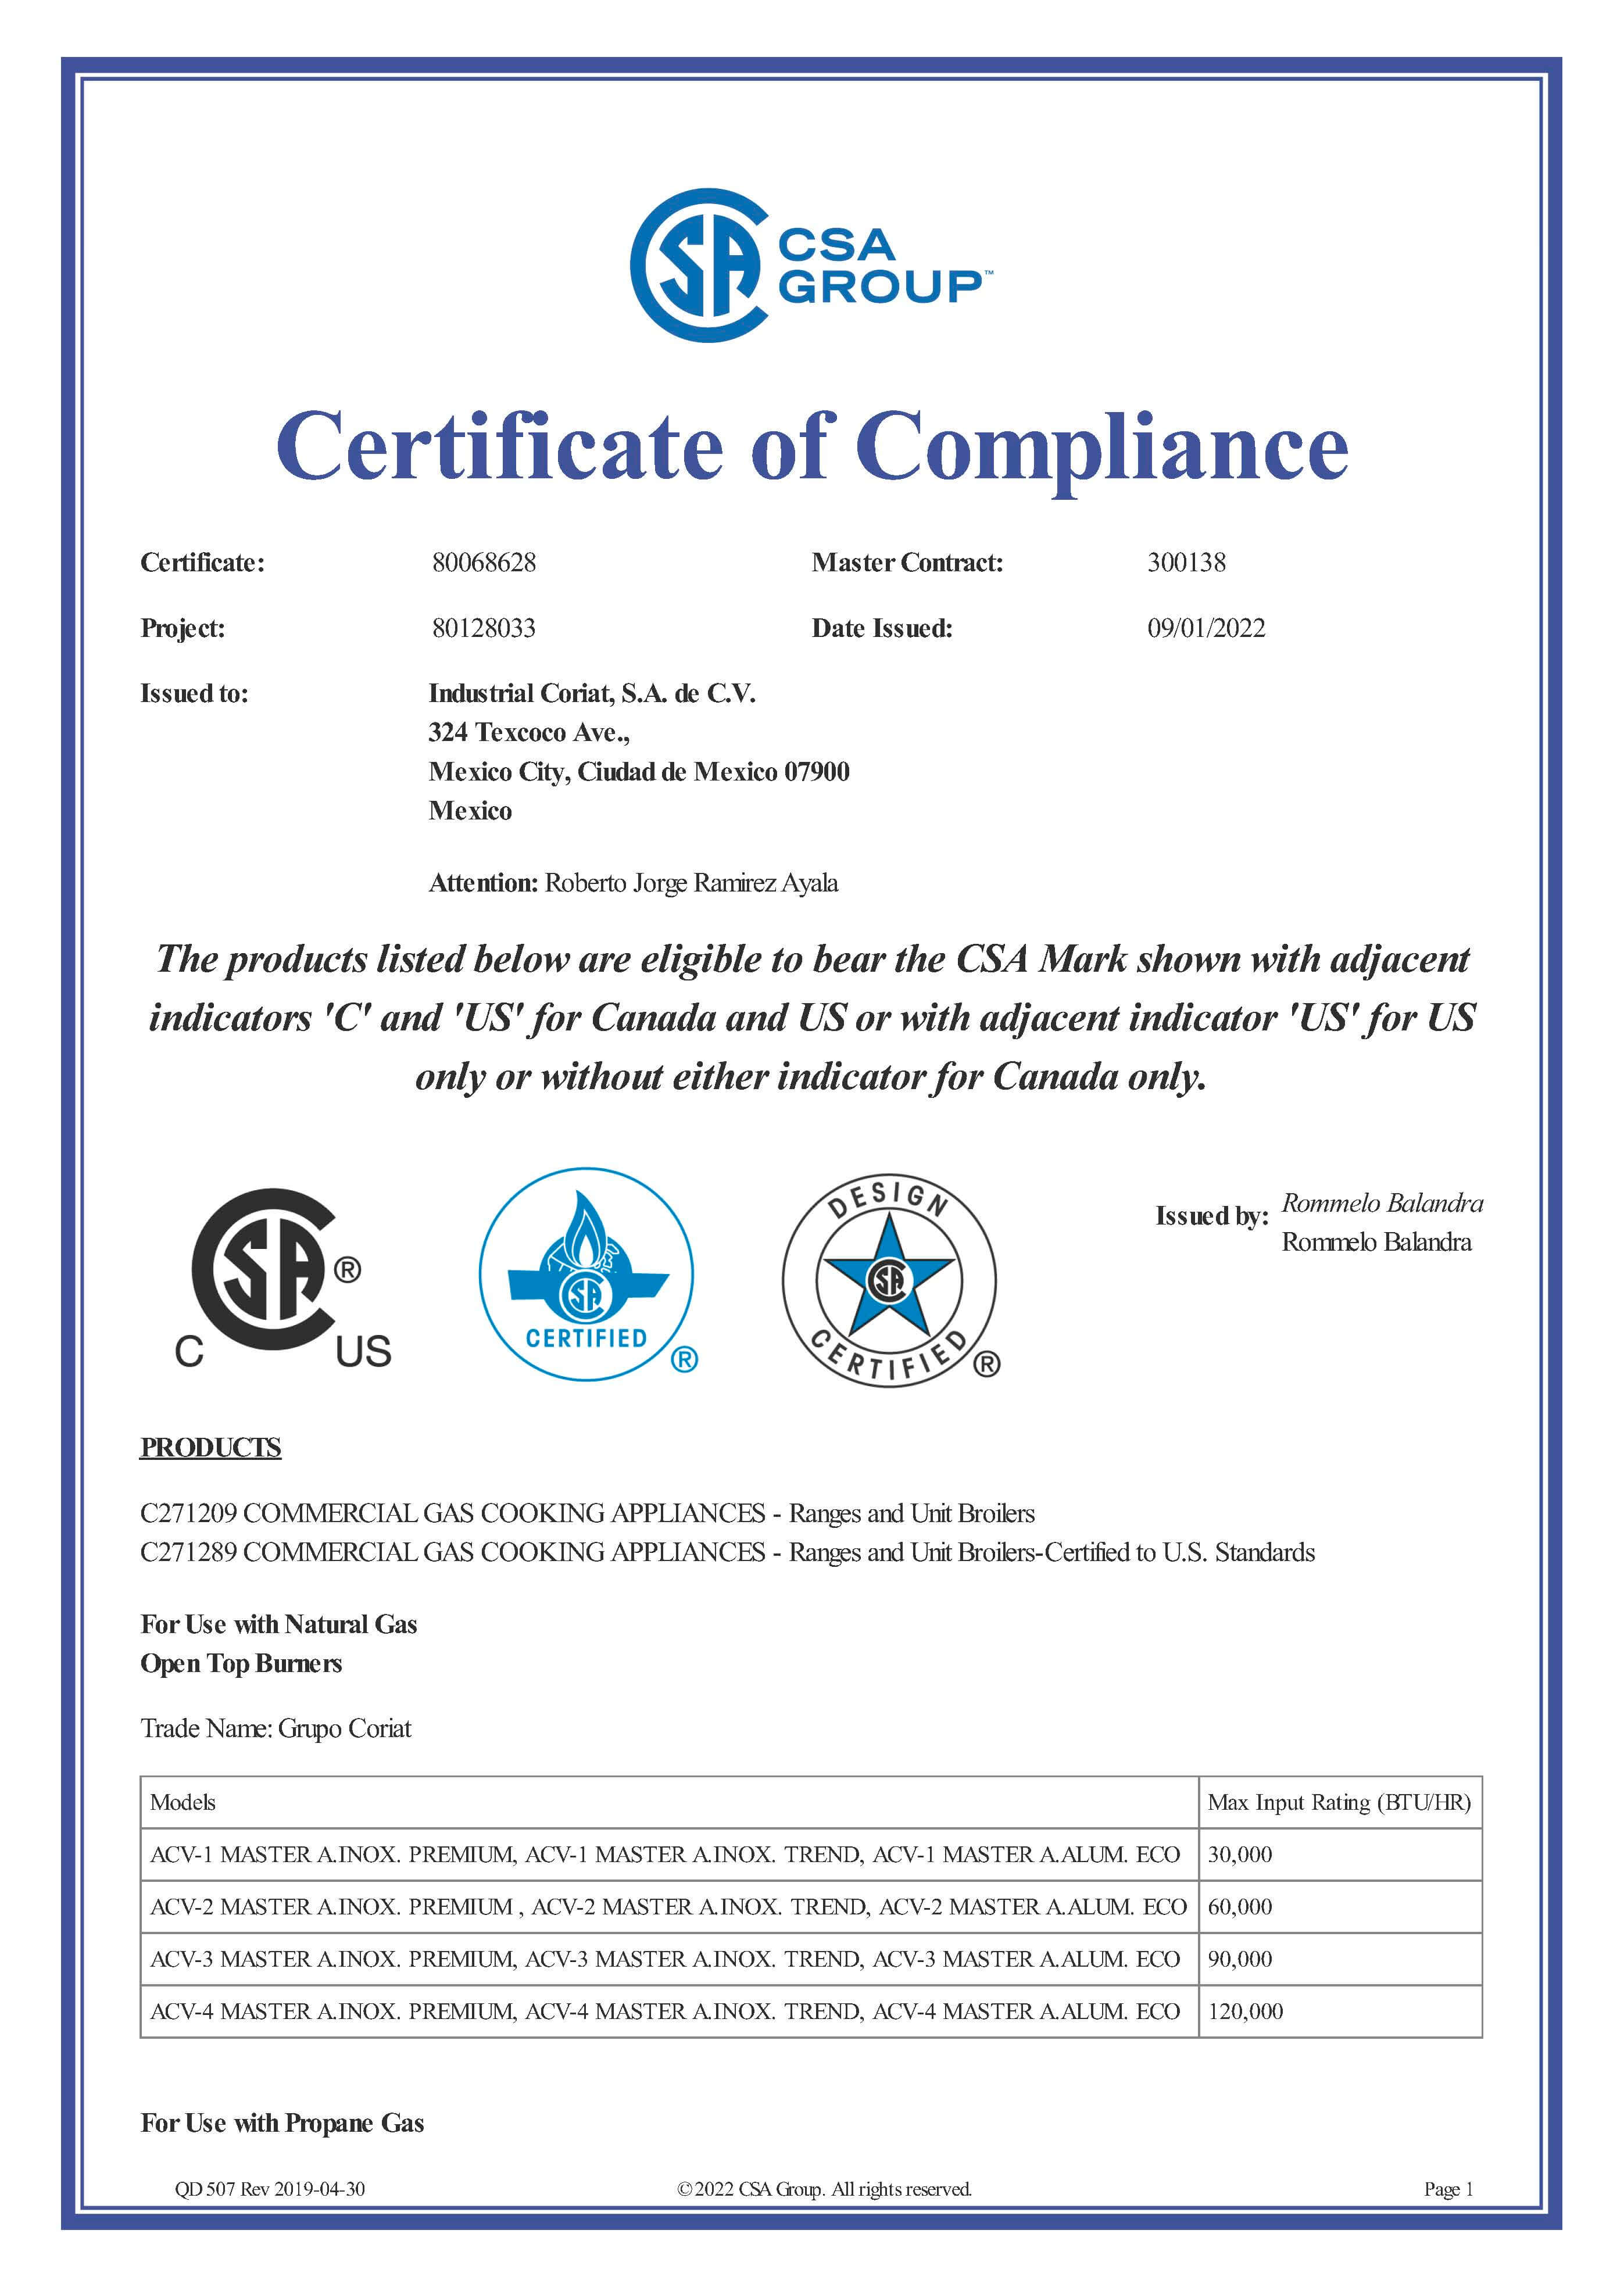 CSA Certificado Coriat Asadores